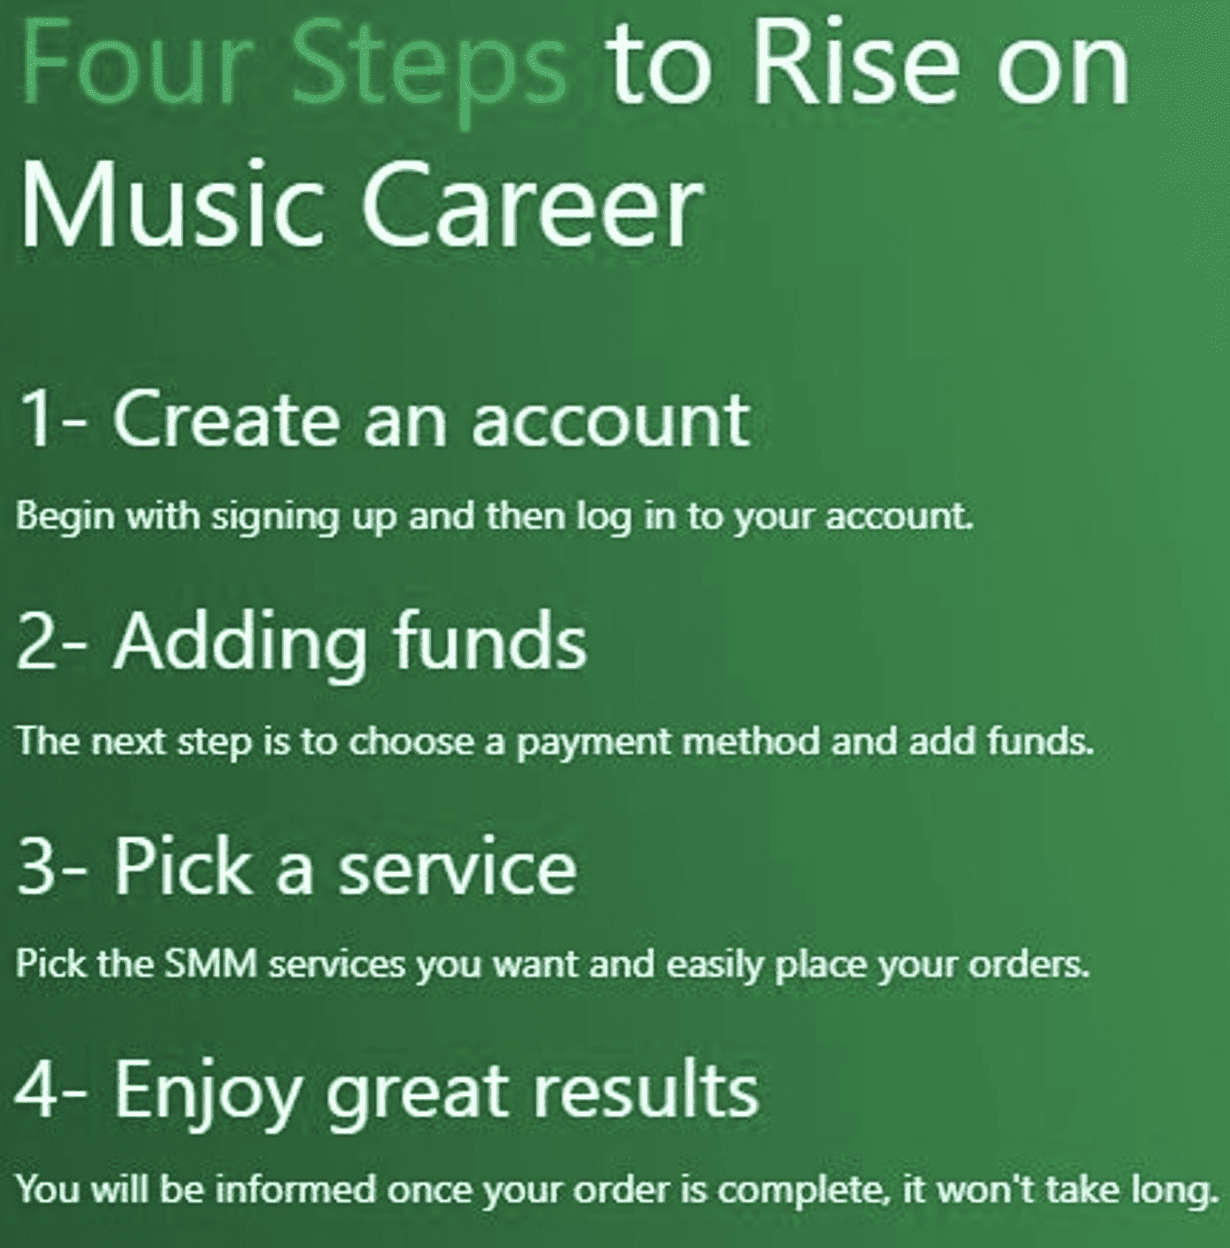 Music career steps